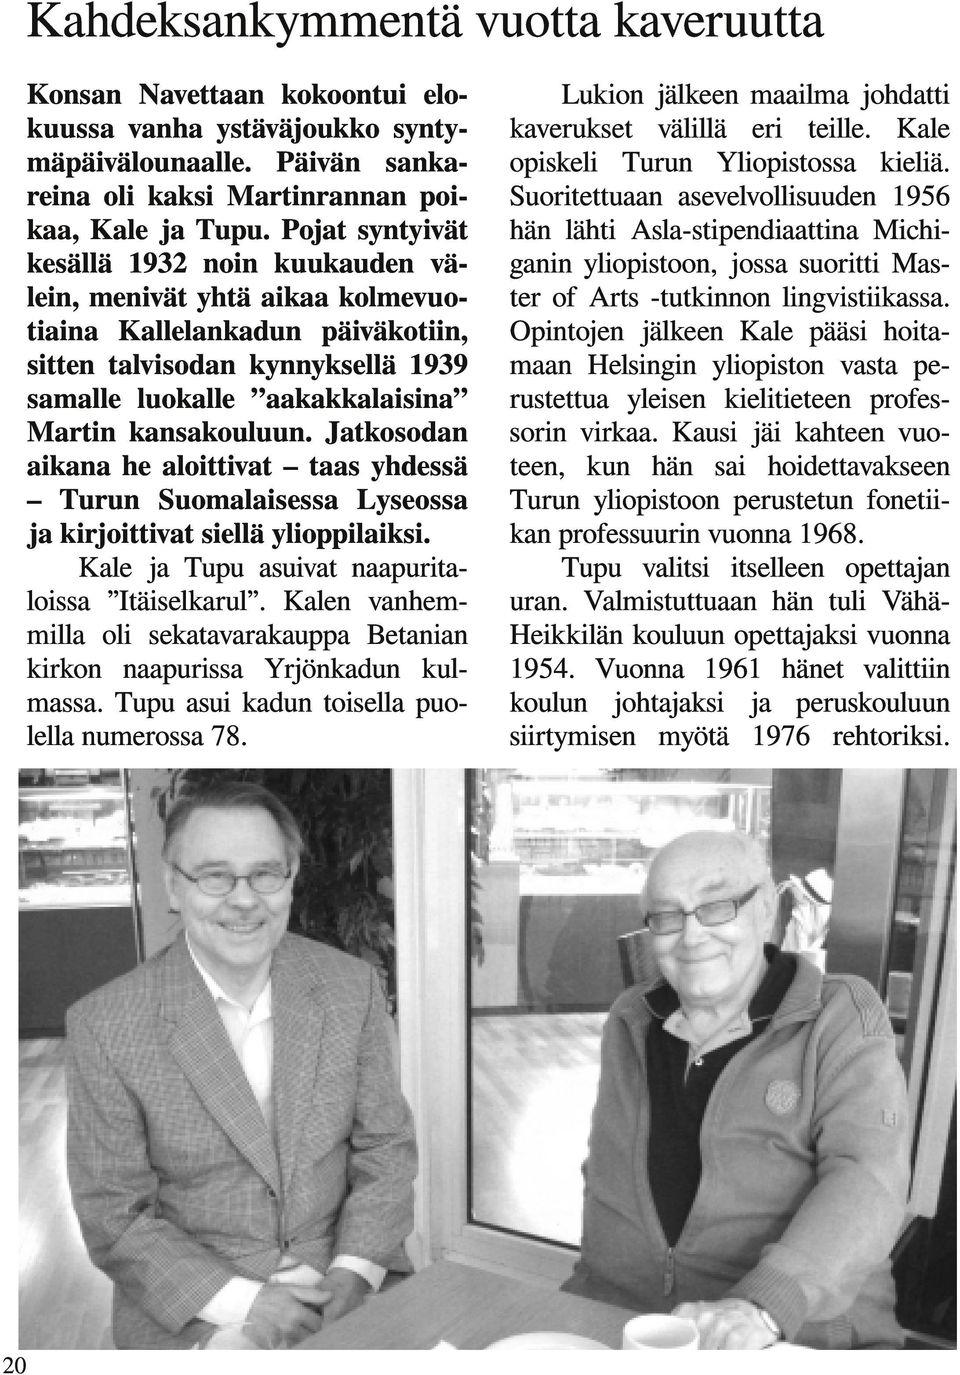 Jatkosodan aikana he aloittivat taas yhdessä Turun Suomalaisessa Lyseossa ja kirjoittivat siellä ylioppilaiksi. Kale ja Tupu asuivat naapuritaloissa Itäiselkarul.